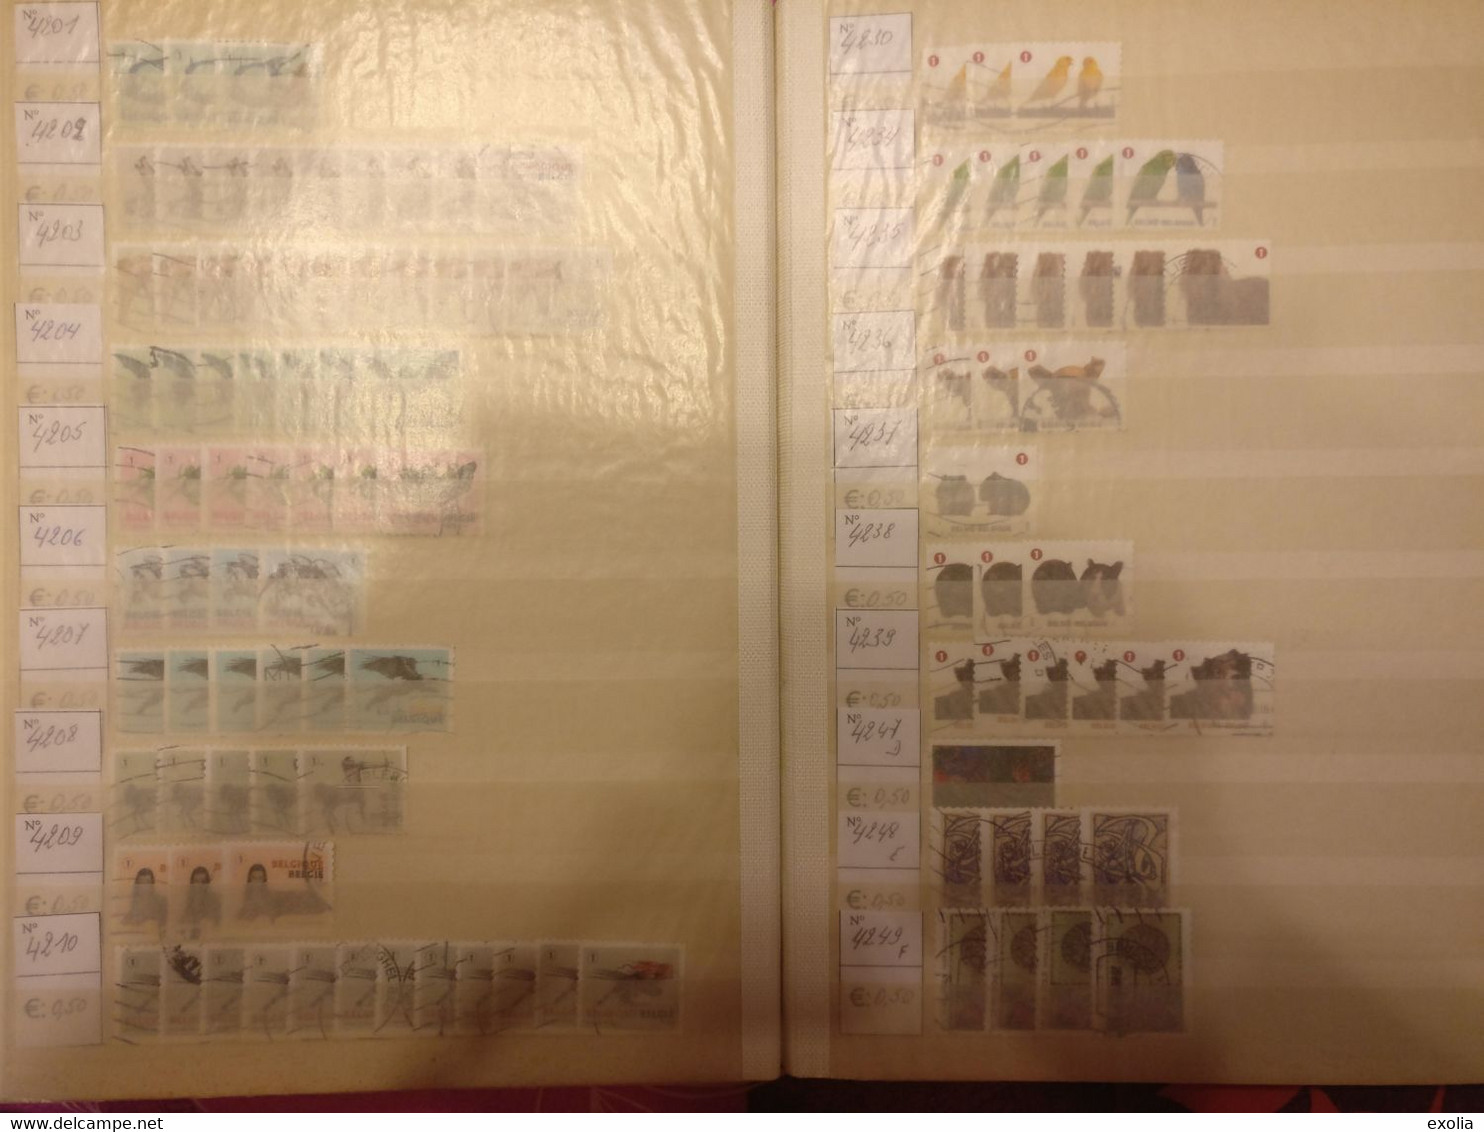 Classeur 48 pages timbres Belgique oblitérés et classés numéros 2949 à 4490 BD Buzin Royauté Lire description complète